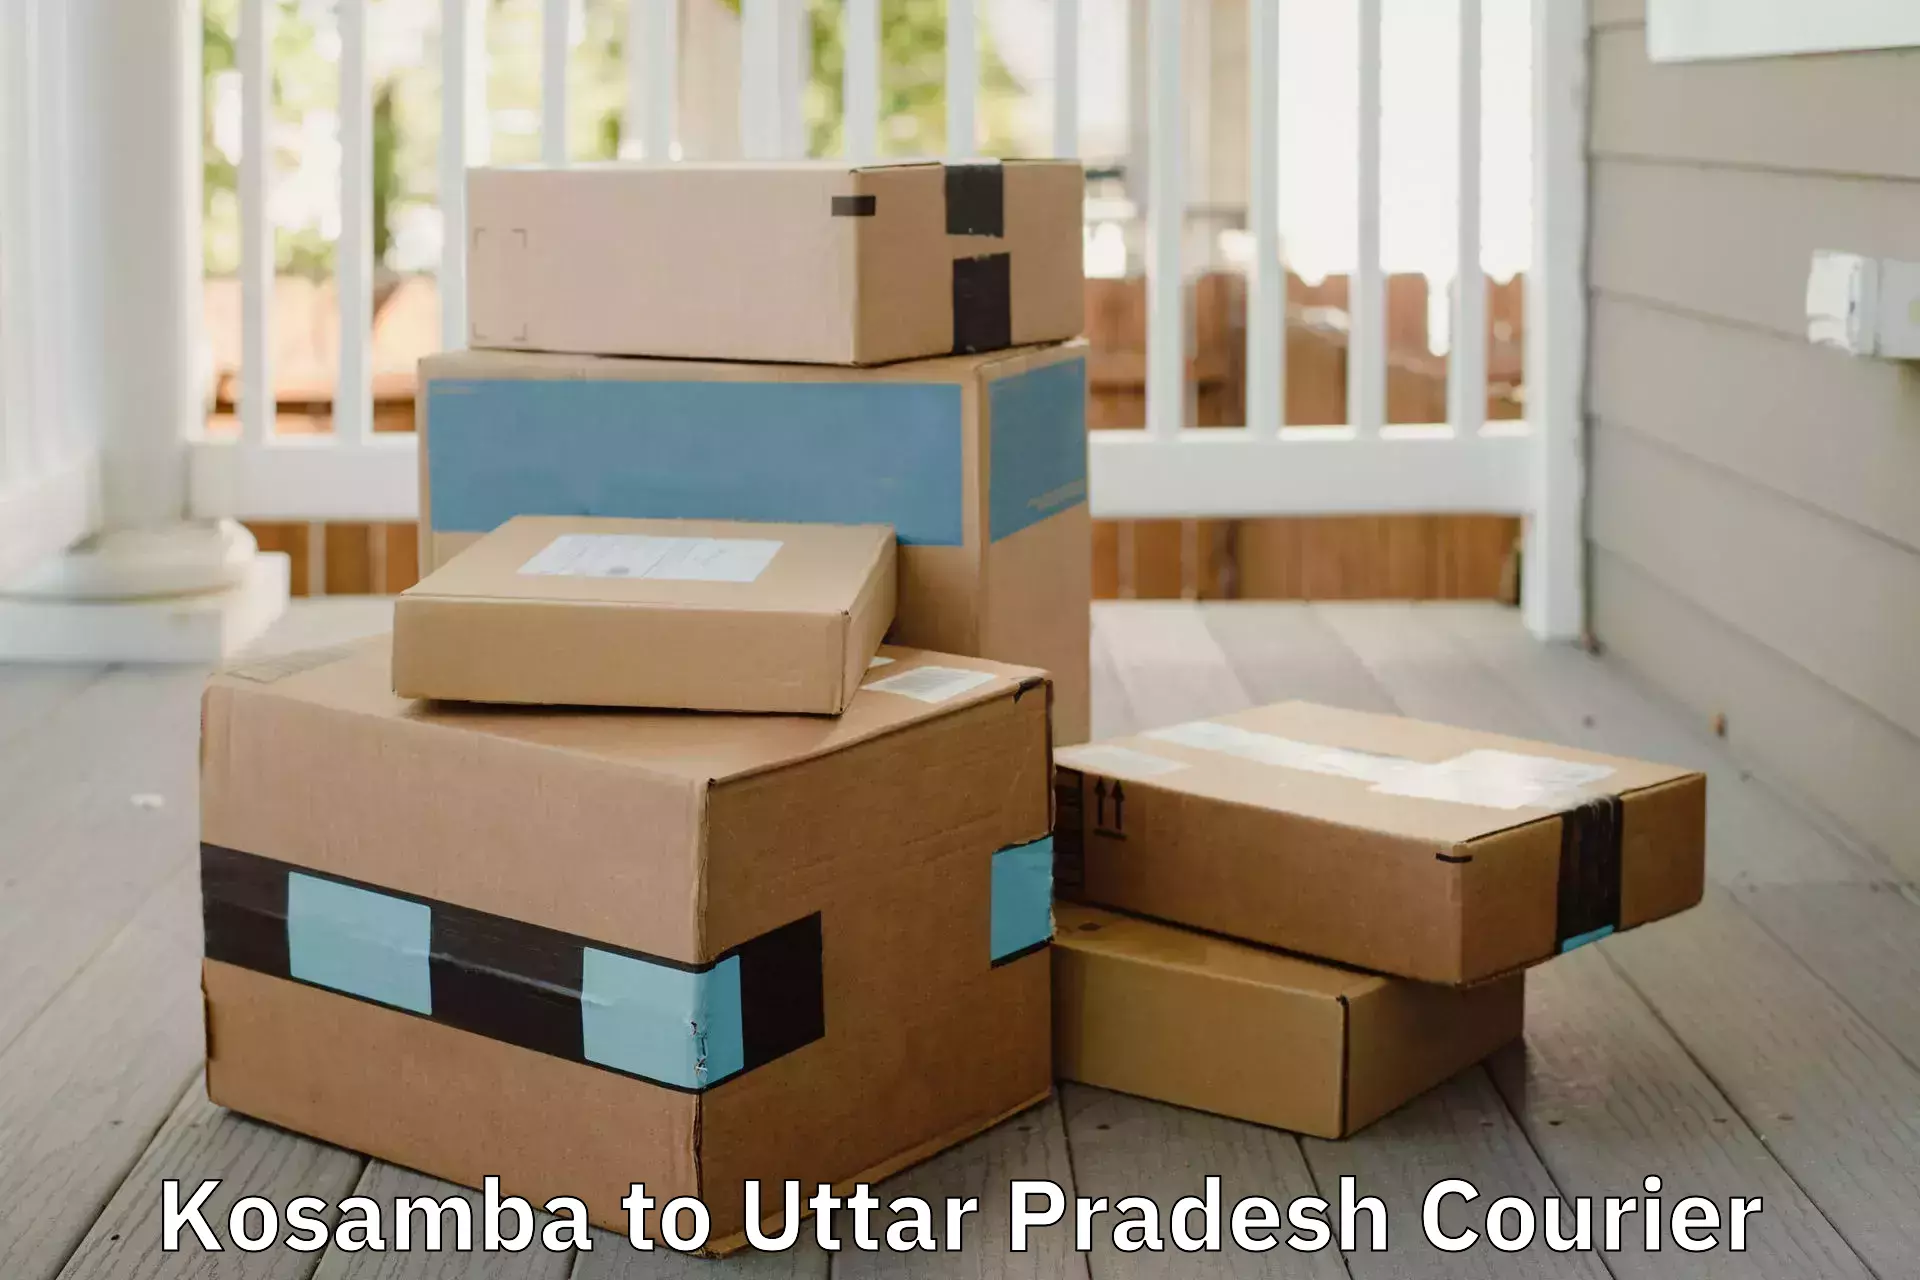 Professional moving company Kosamba to Sant Ravidas Nagar